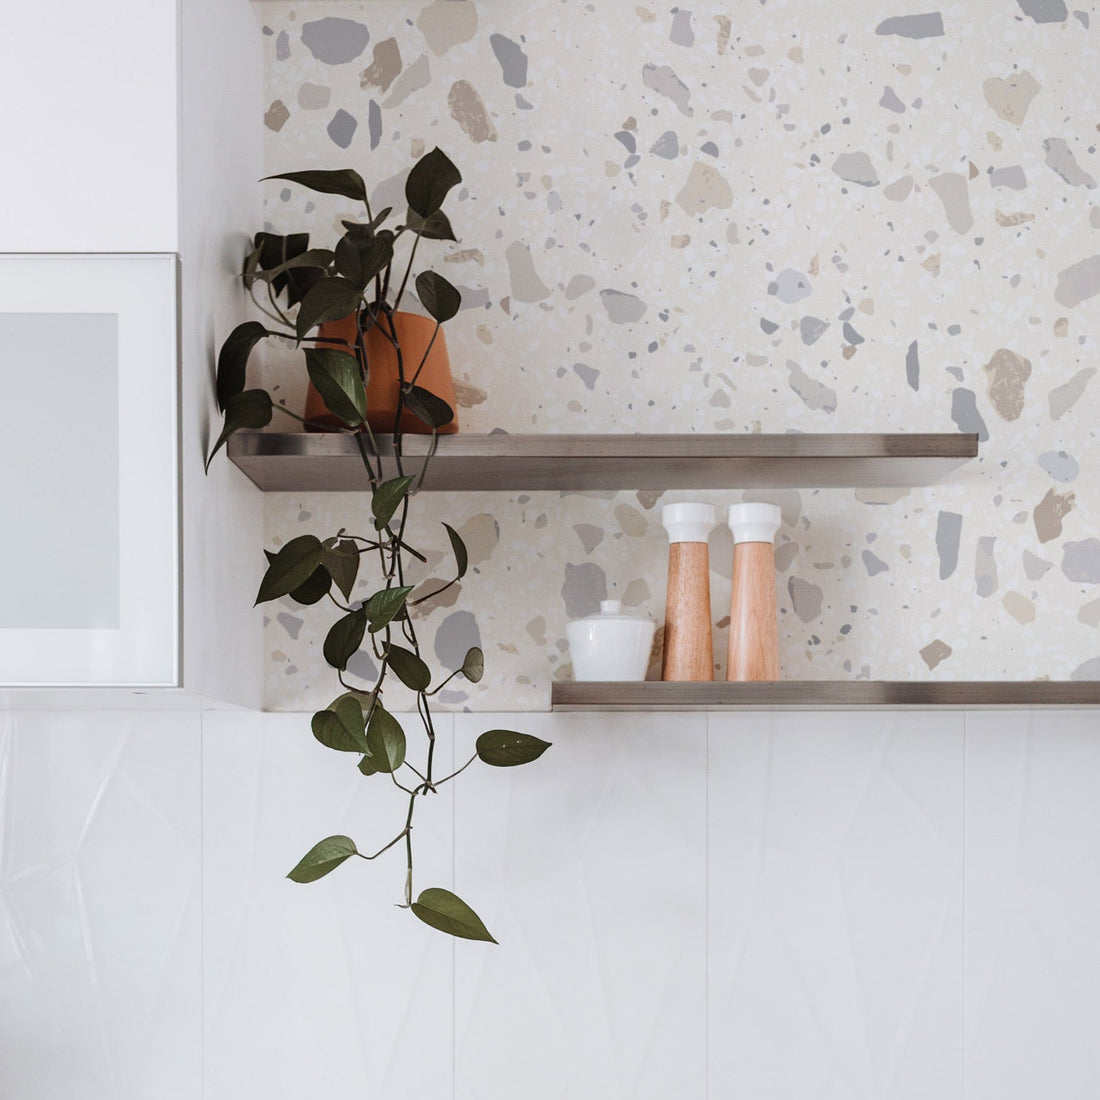 Neutral terrazzo design removable wallpaper in white bathroom interior